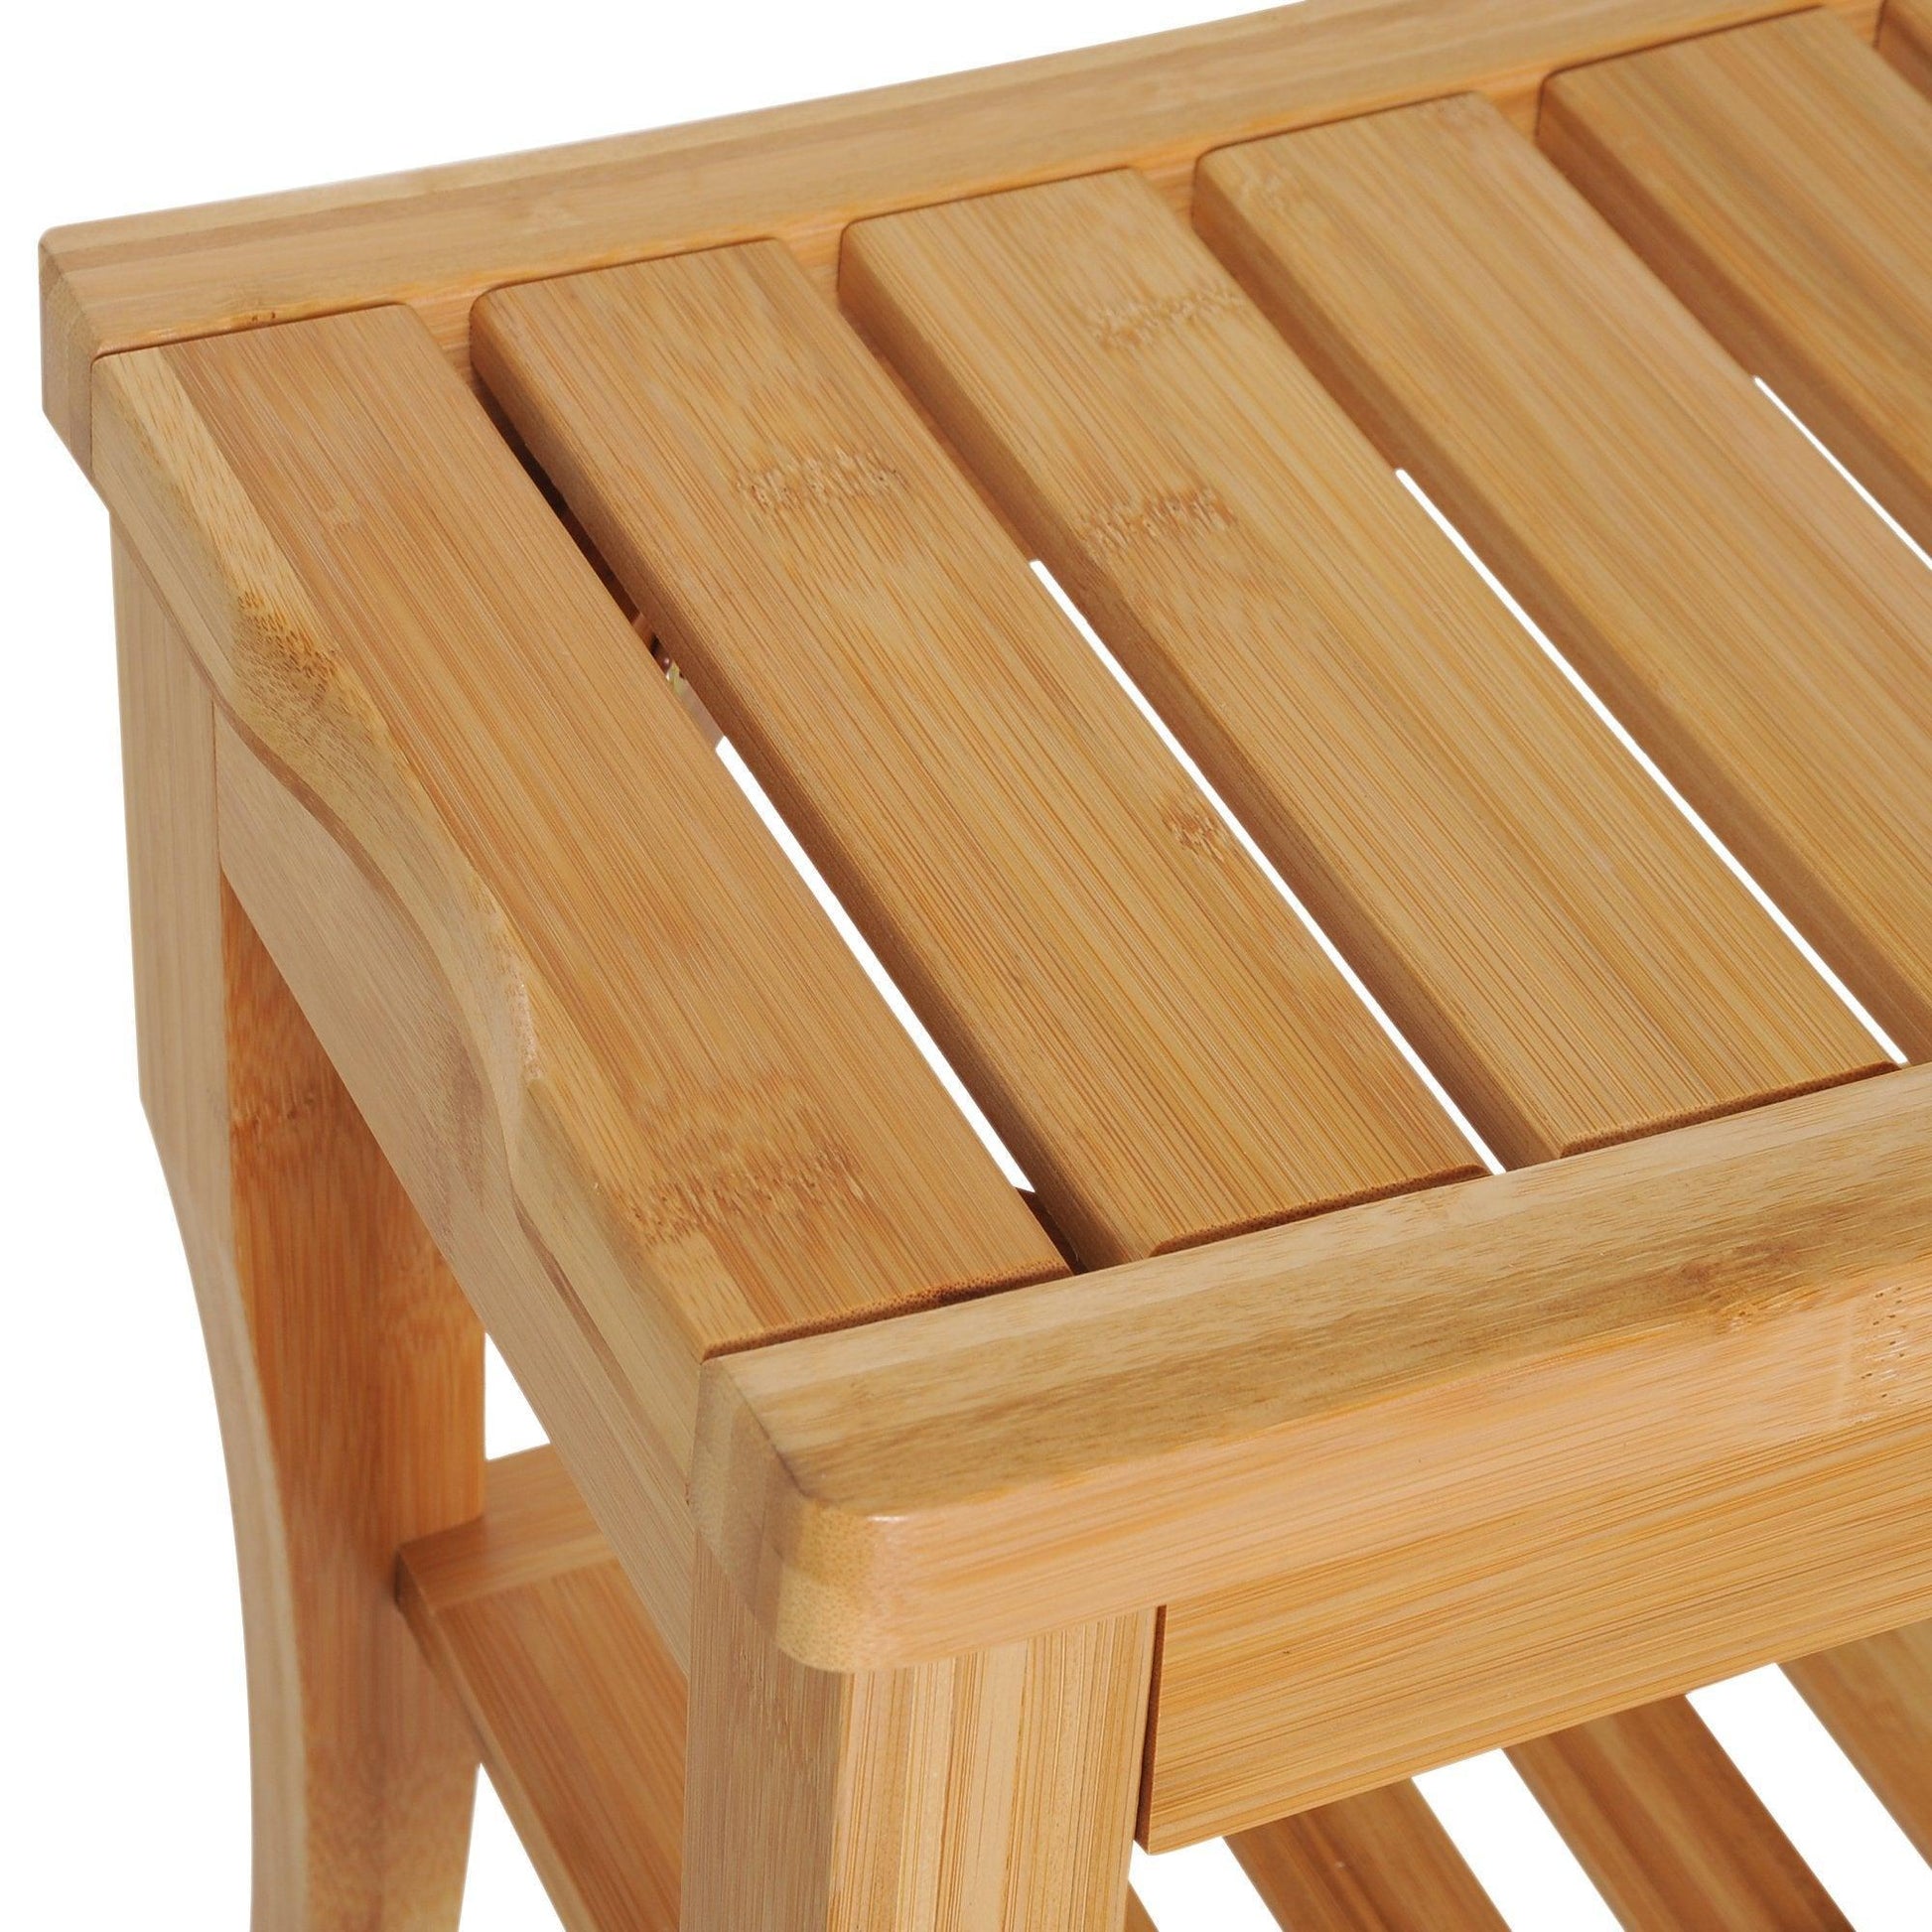 HOMCOM Bamboo Shower Bench with Lower Shelf - ALL4U RETAILER LTD